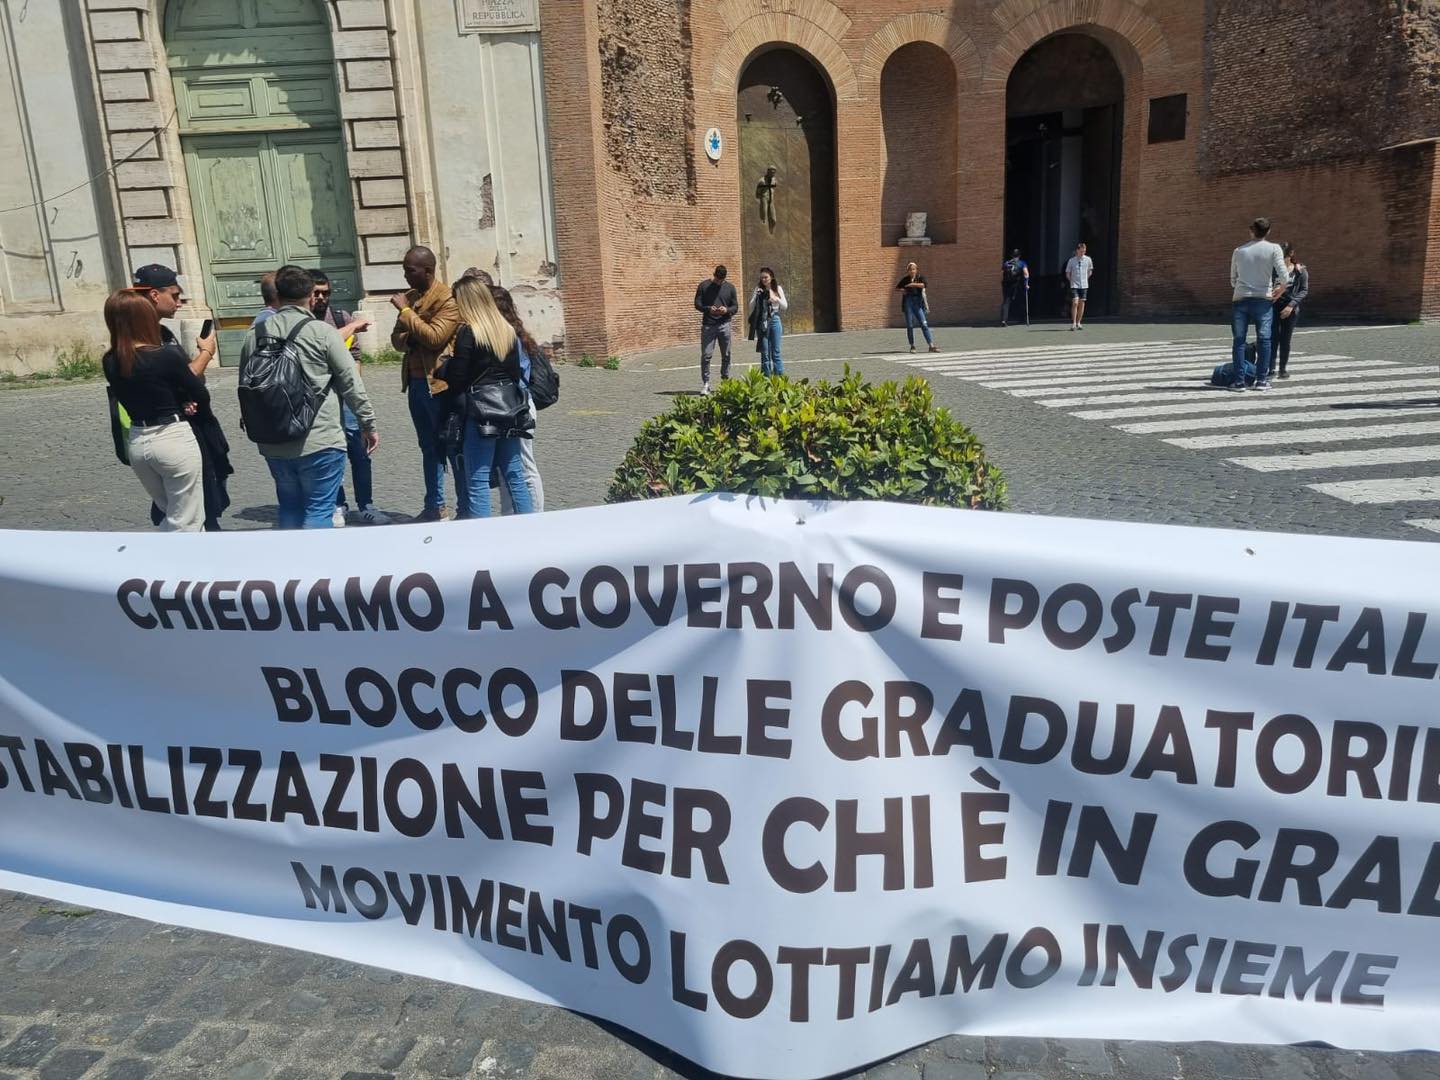 Roma: Poste Italiane, “Lottiamo Insieme” in piazza contro precariato  